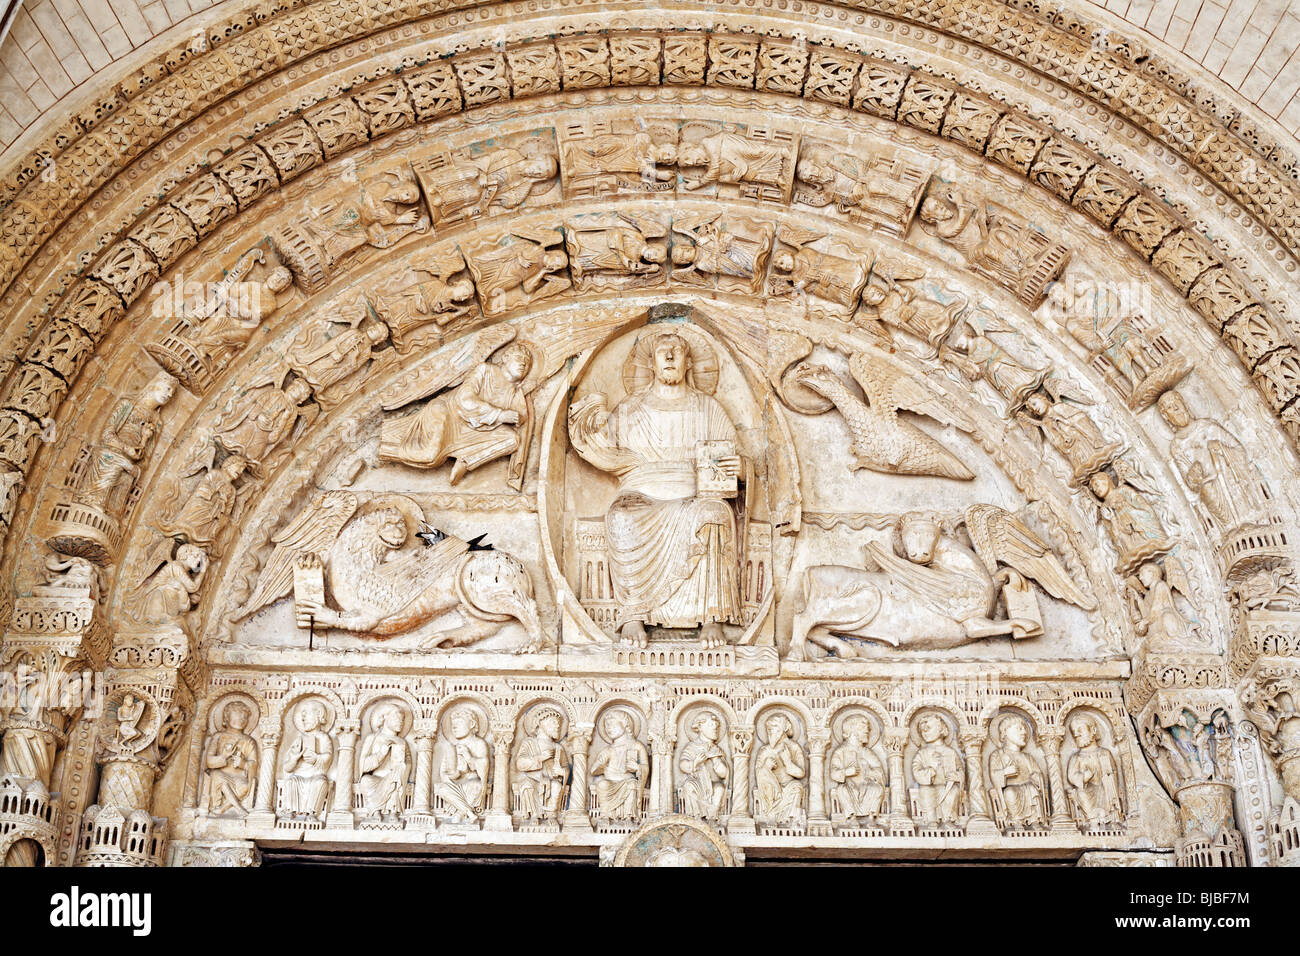 L'art religieux, sculptures romanes sur le portail de la cathédrale de Bourges (1195-1270), UNESCO World Heritage Site, Bourges, France Banque D'Images